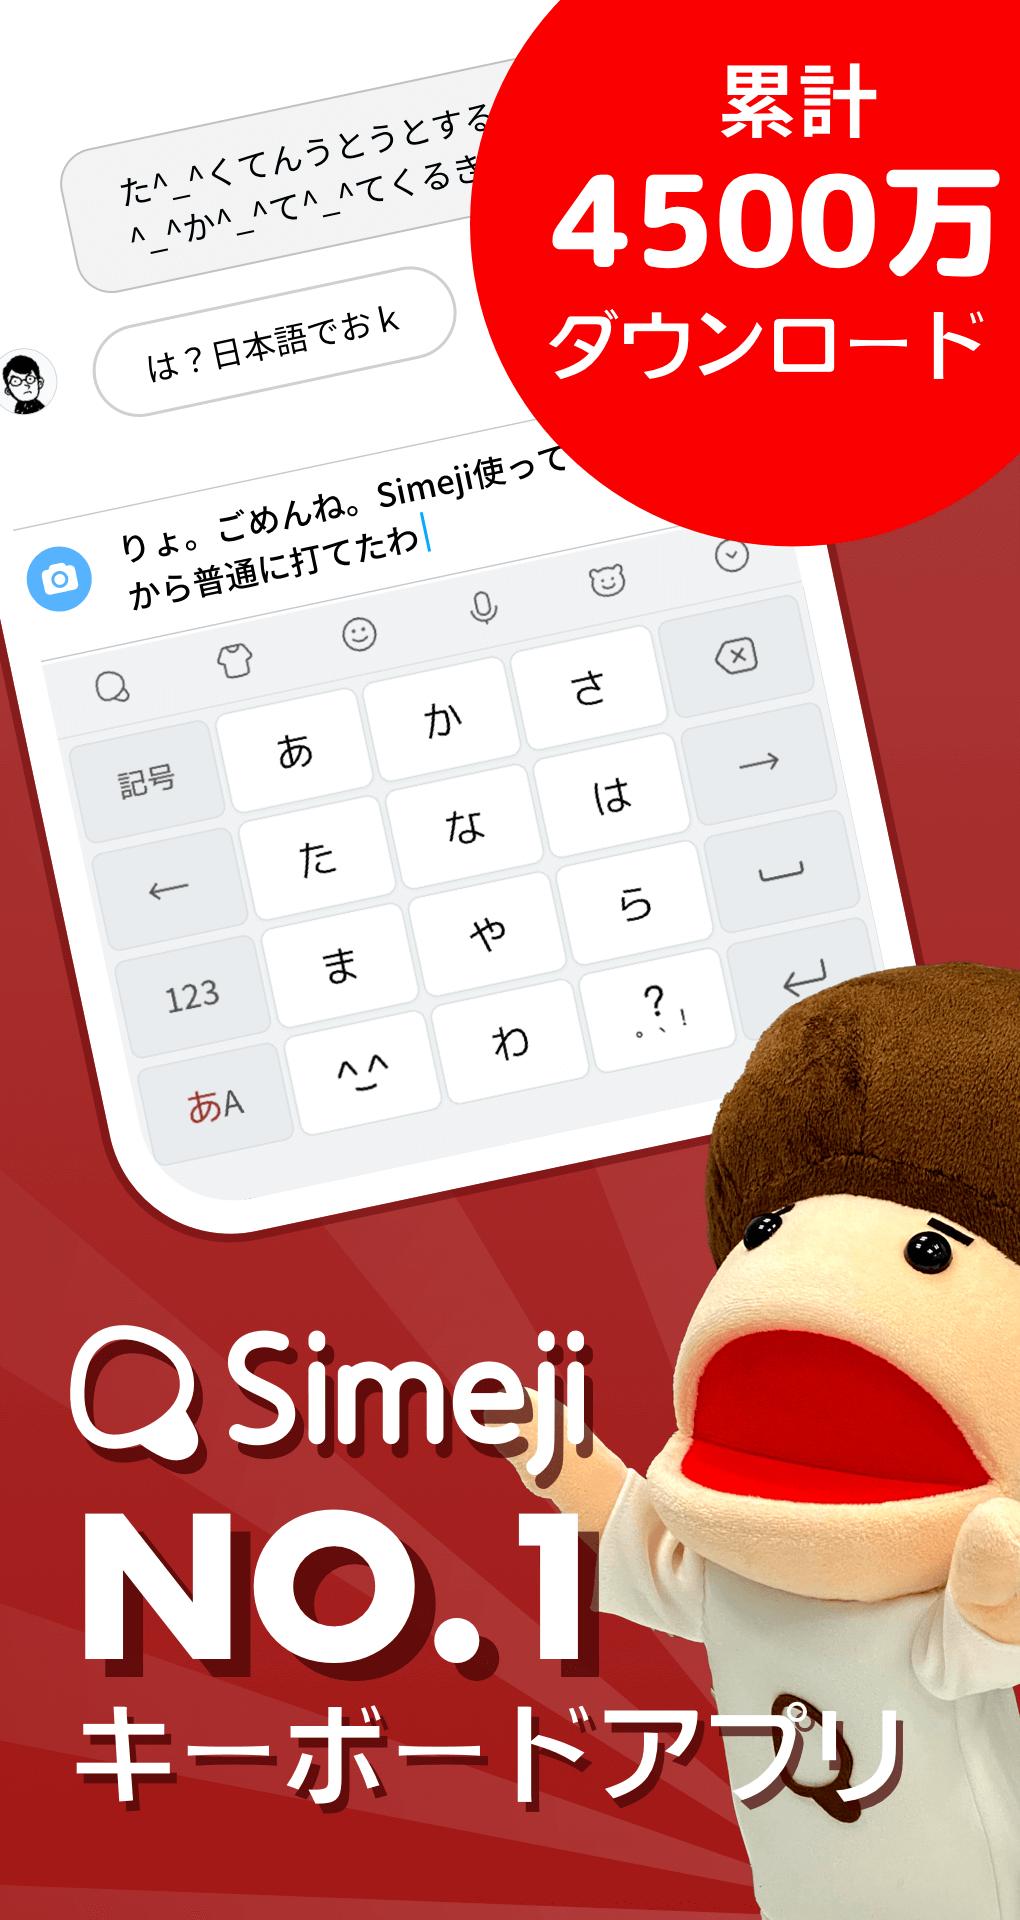 Android 用の Simeji Apk をダウンロード